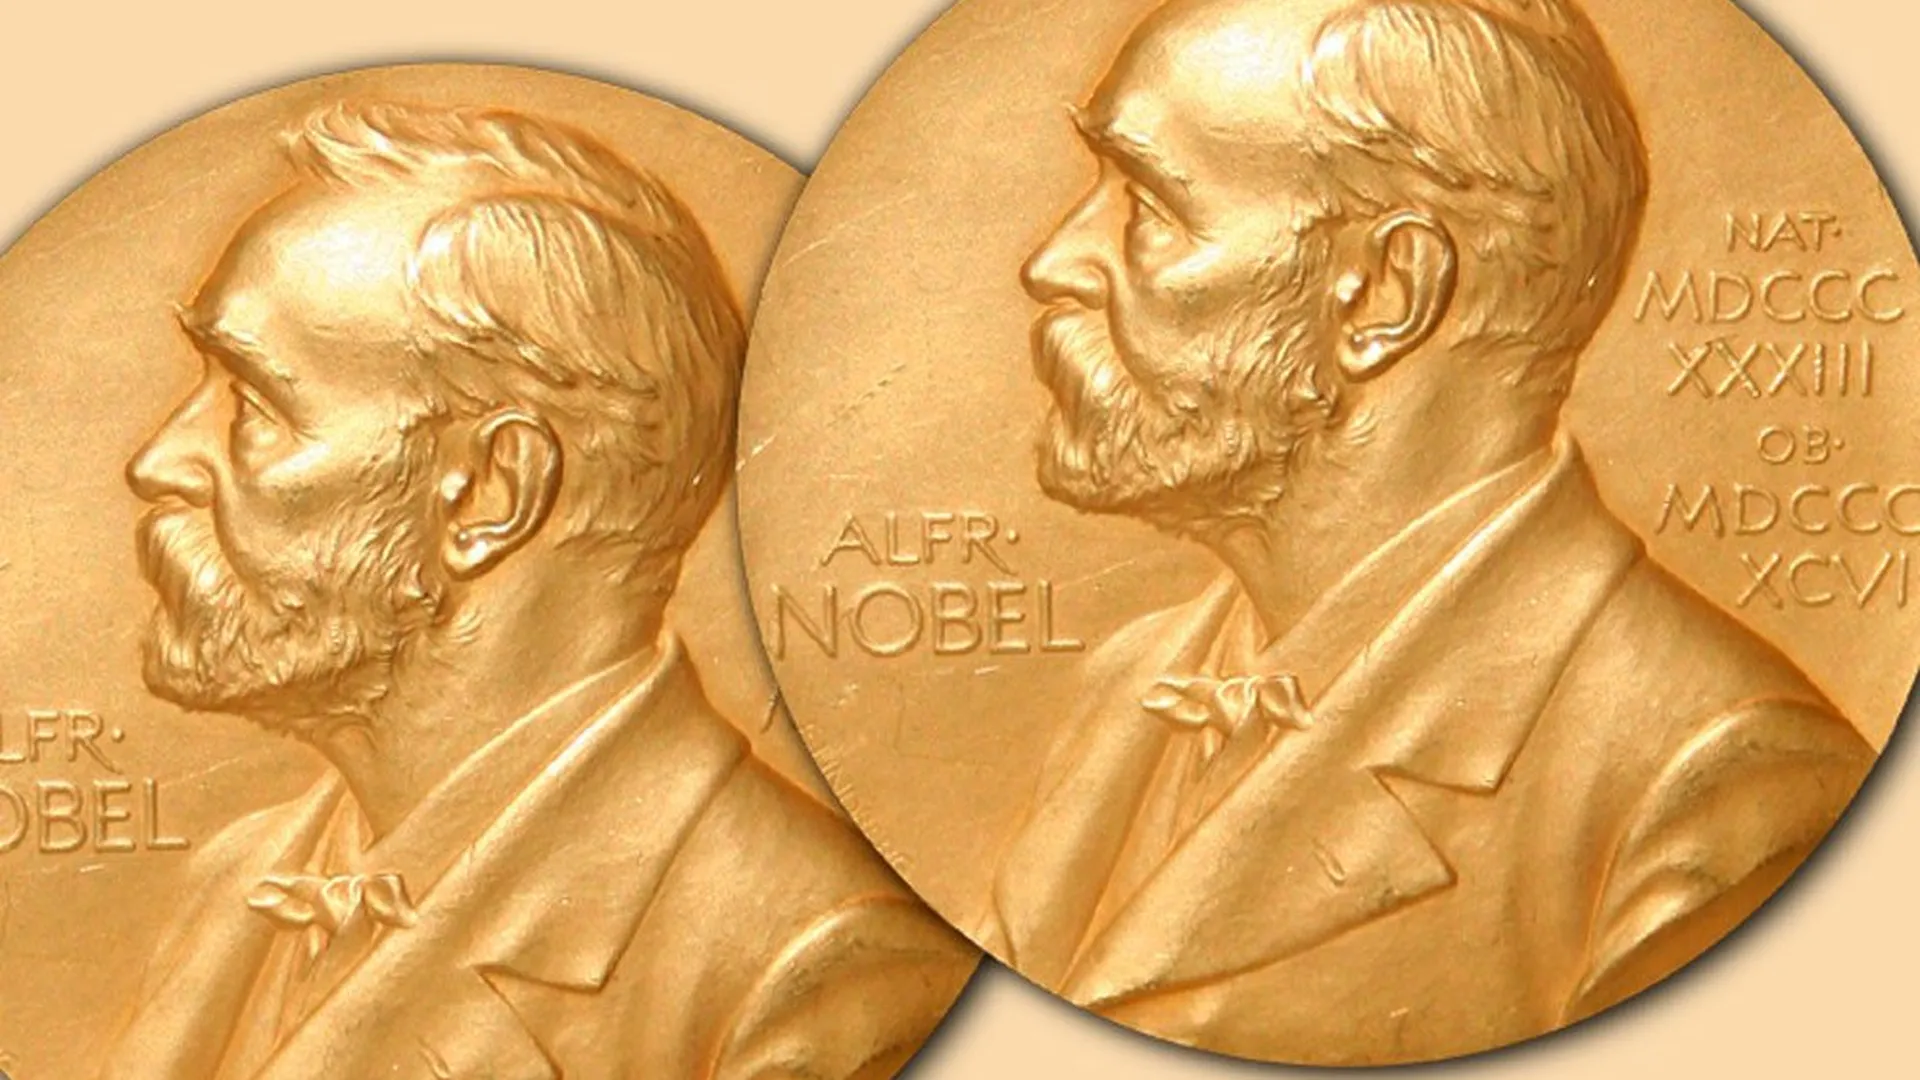 Nobel prize awards. Нобелевская премия по химии 1911. Медаль Нобелевской премии по литературе. Нобелевская премия по химии 1903. Медаль Нобеля и Нобелевская премия.